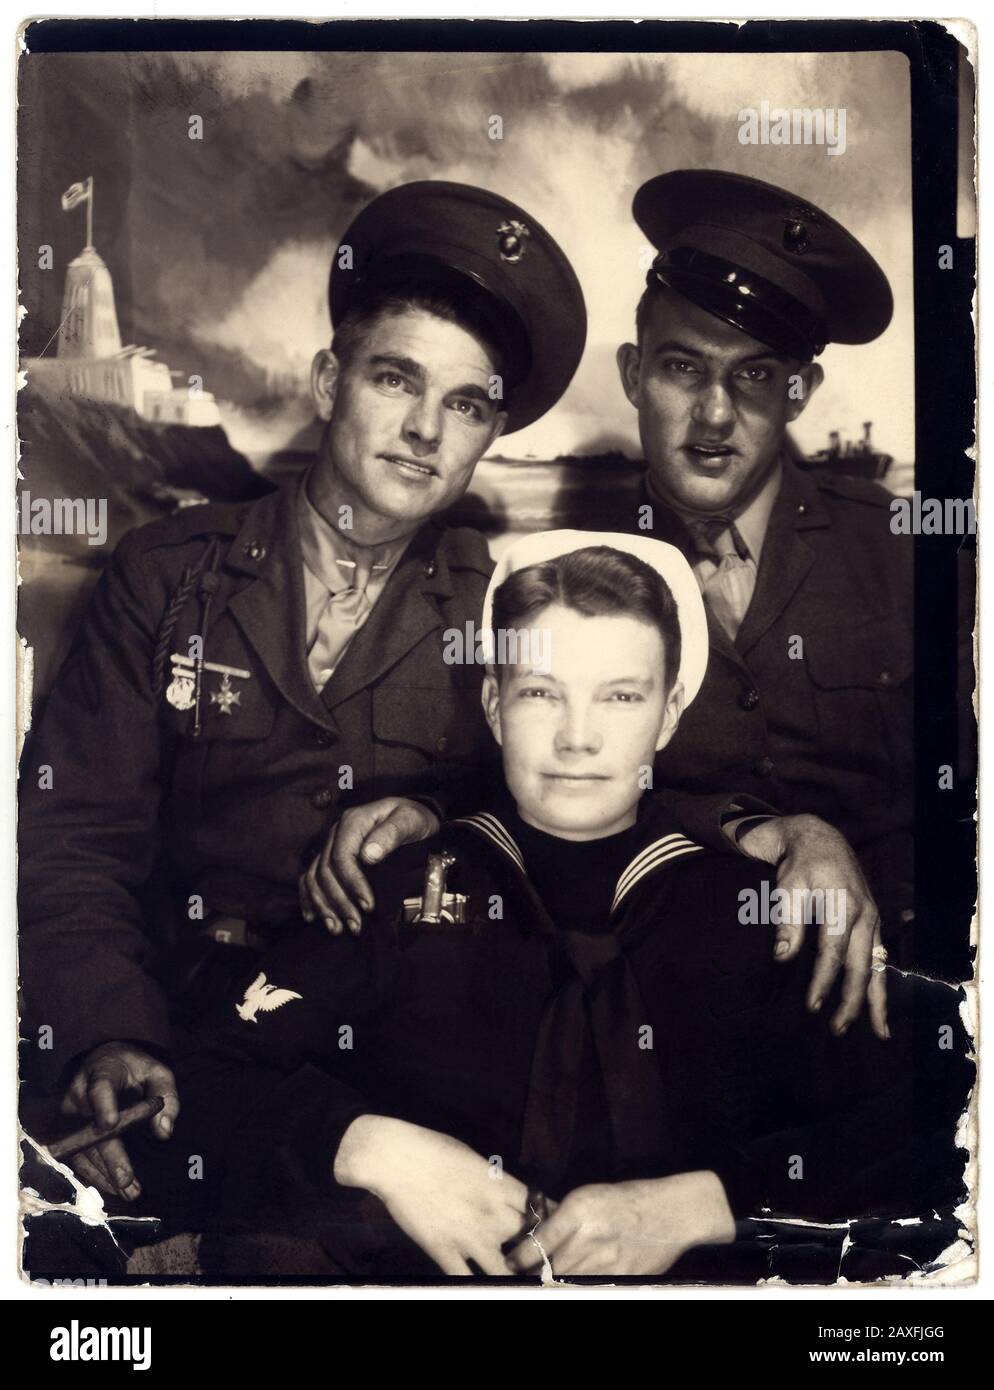 1940 ca , USA : Due militari DELL'ESERCITO americano con un marinaio ( Paul Morris ), Photoboot - UNIFORMA MILITARE - uomo uomo HANDOME - CUCCETTE - cappello - cappello - UNIFORME MILITARE - MILITARI - UNIFORME FOREX - MARINA - MARINA - MARINAIO - MARINAI - MARINAI - sigaro - sigari - UOMINI BELLI - UOMO BELLO - mani - mano - mano - mano - mani - mani - ritratto - RITRATTO - GUERRA NEL PACIFICO - cravatta - cravatta - collare - colletto - GAY - ritratto - ritatto - omosessuale - omosessuale - omosessualità - omosessualita' - sessuologia - muscleman - uomo muscoloso - BEEFCAKE - erotismo - CULTURA FISICA - FISCULTU Foto Stock